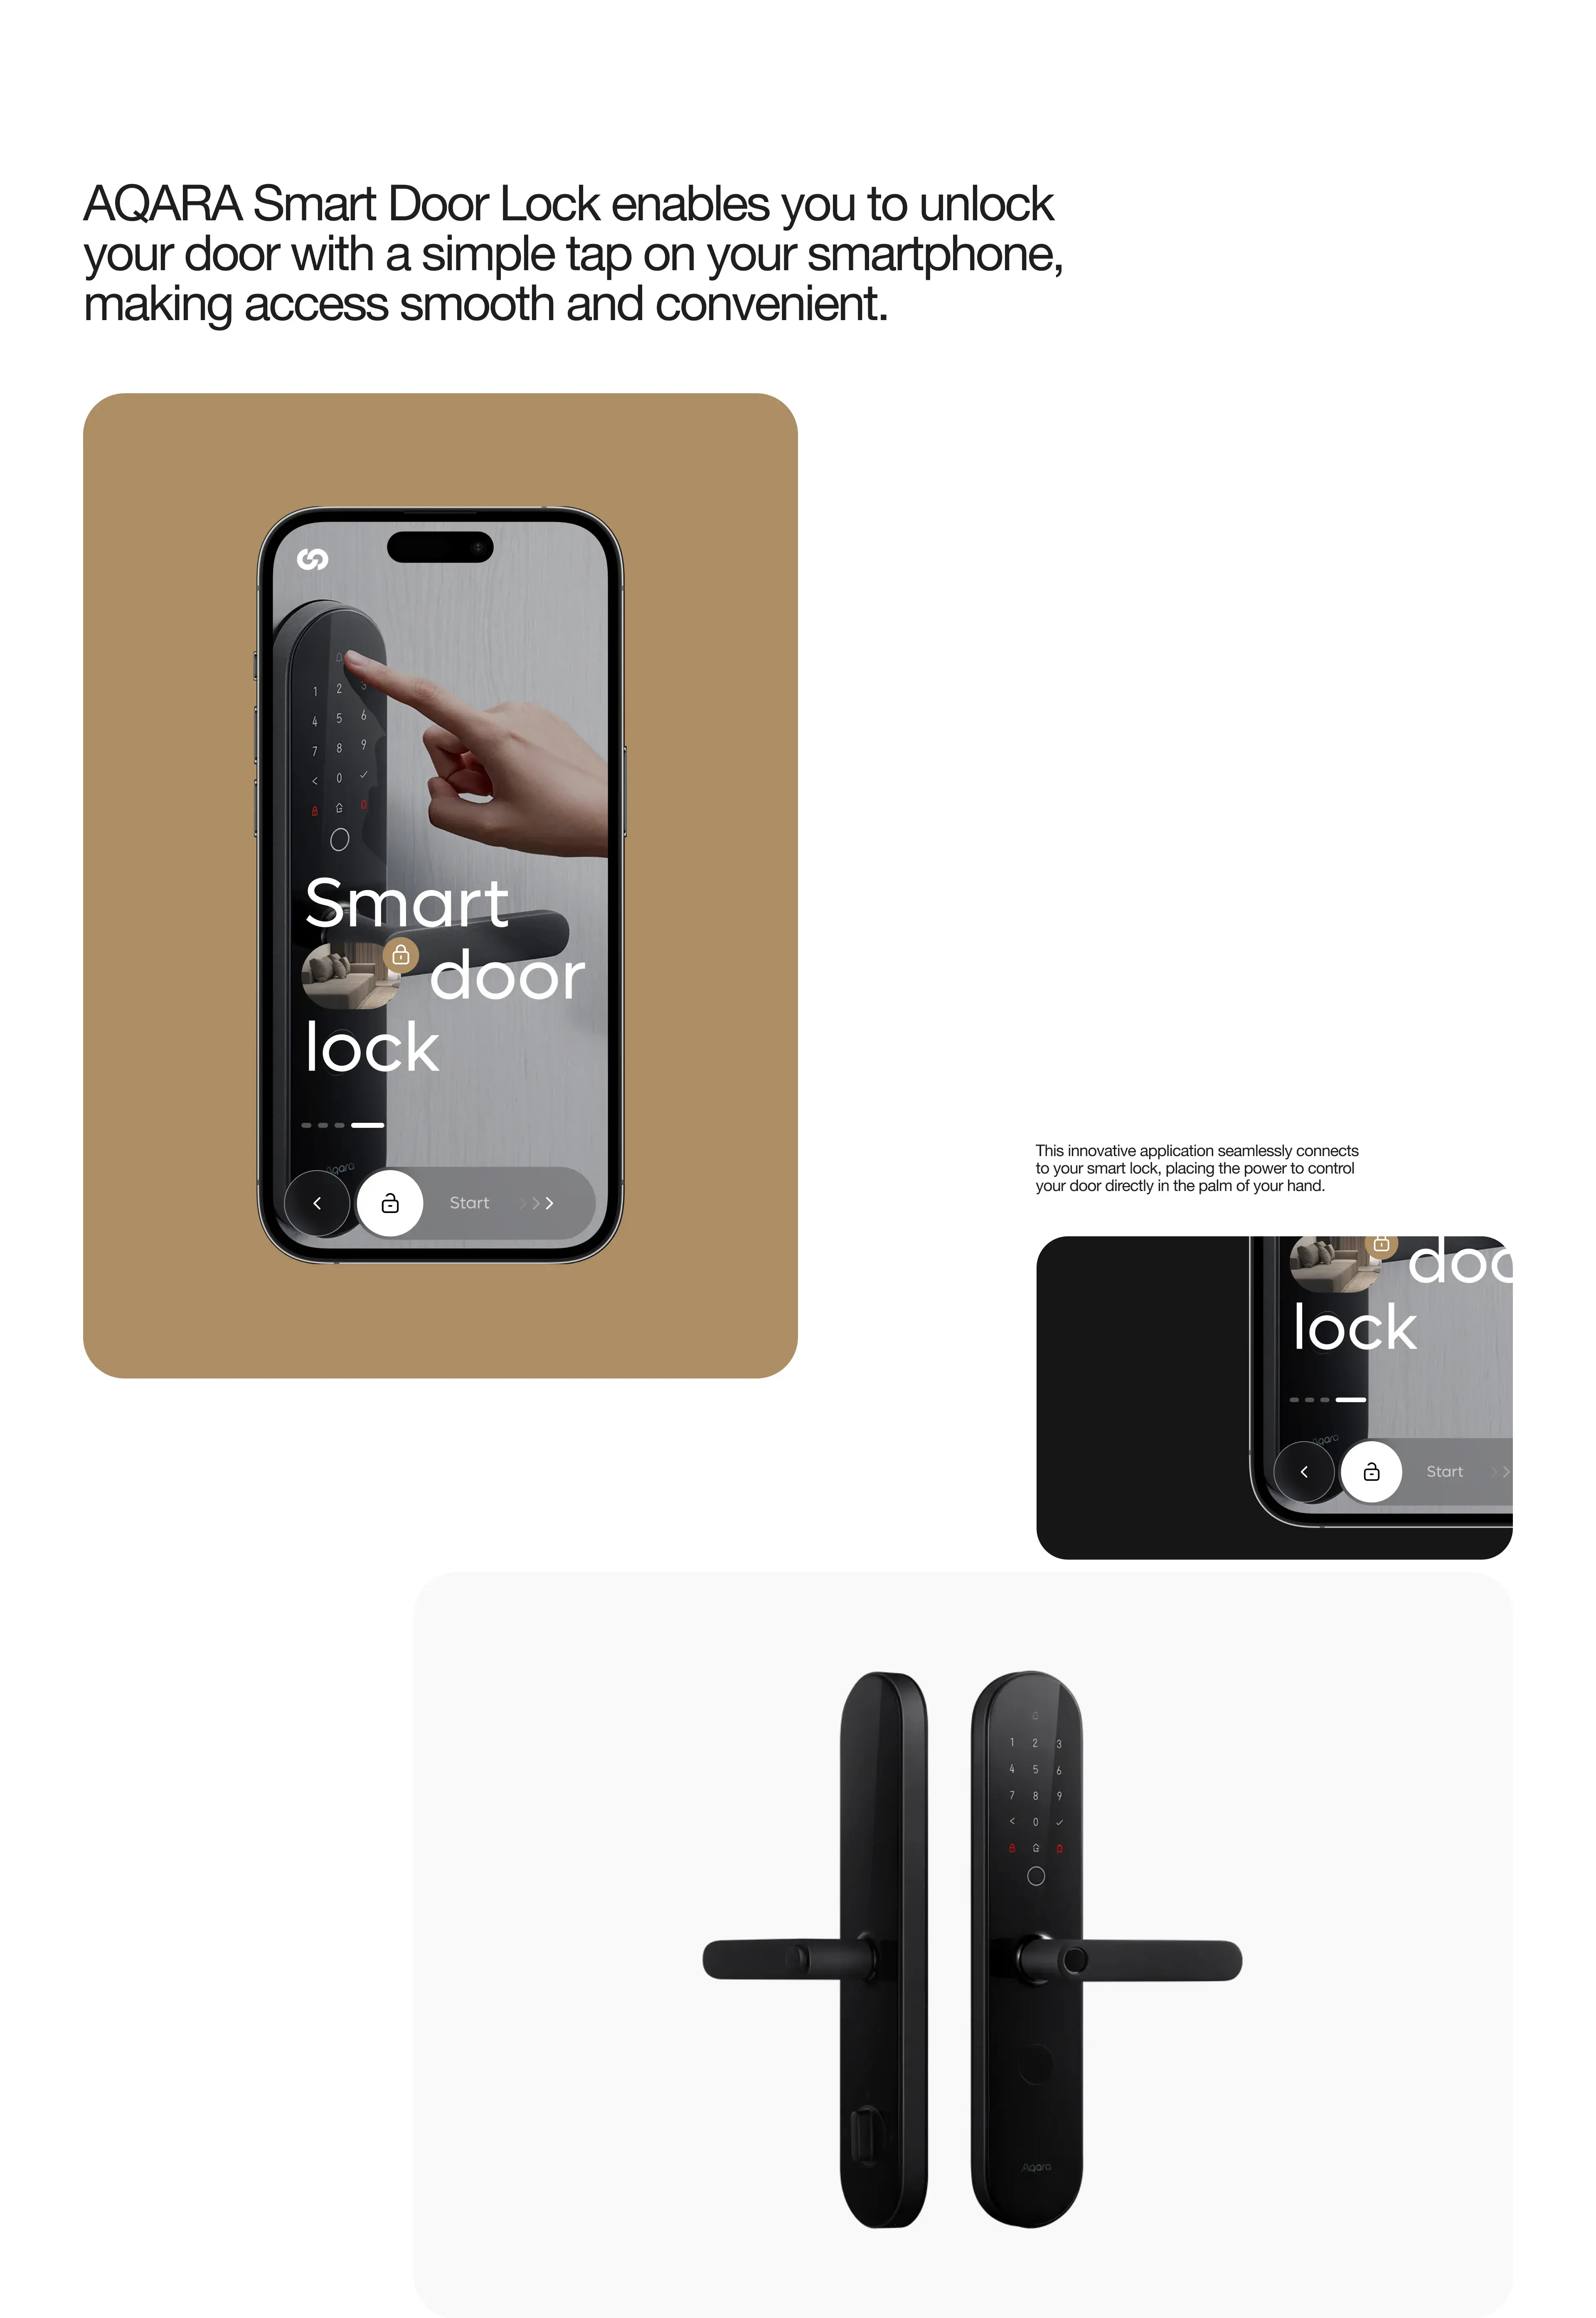 SmartLock - Branding & Smart Home UX UI Design